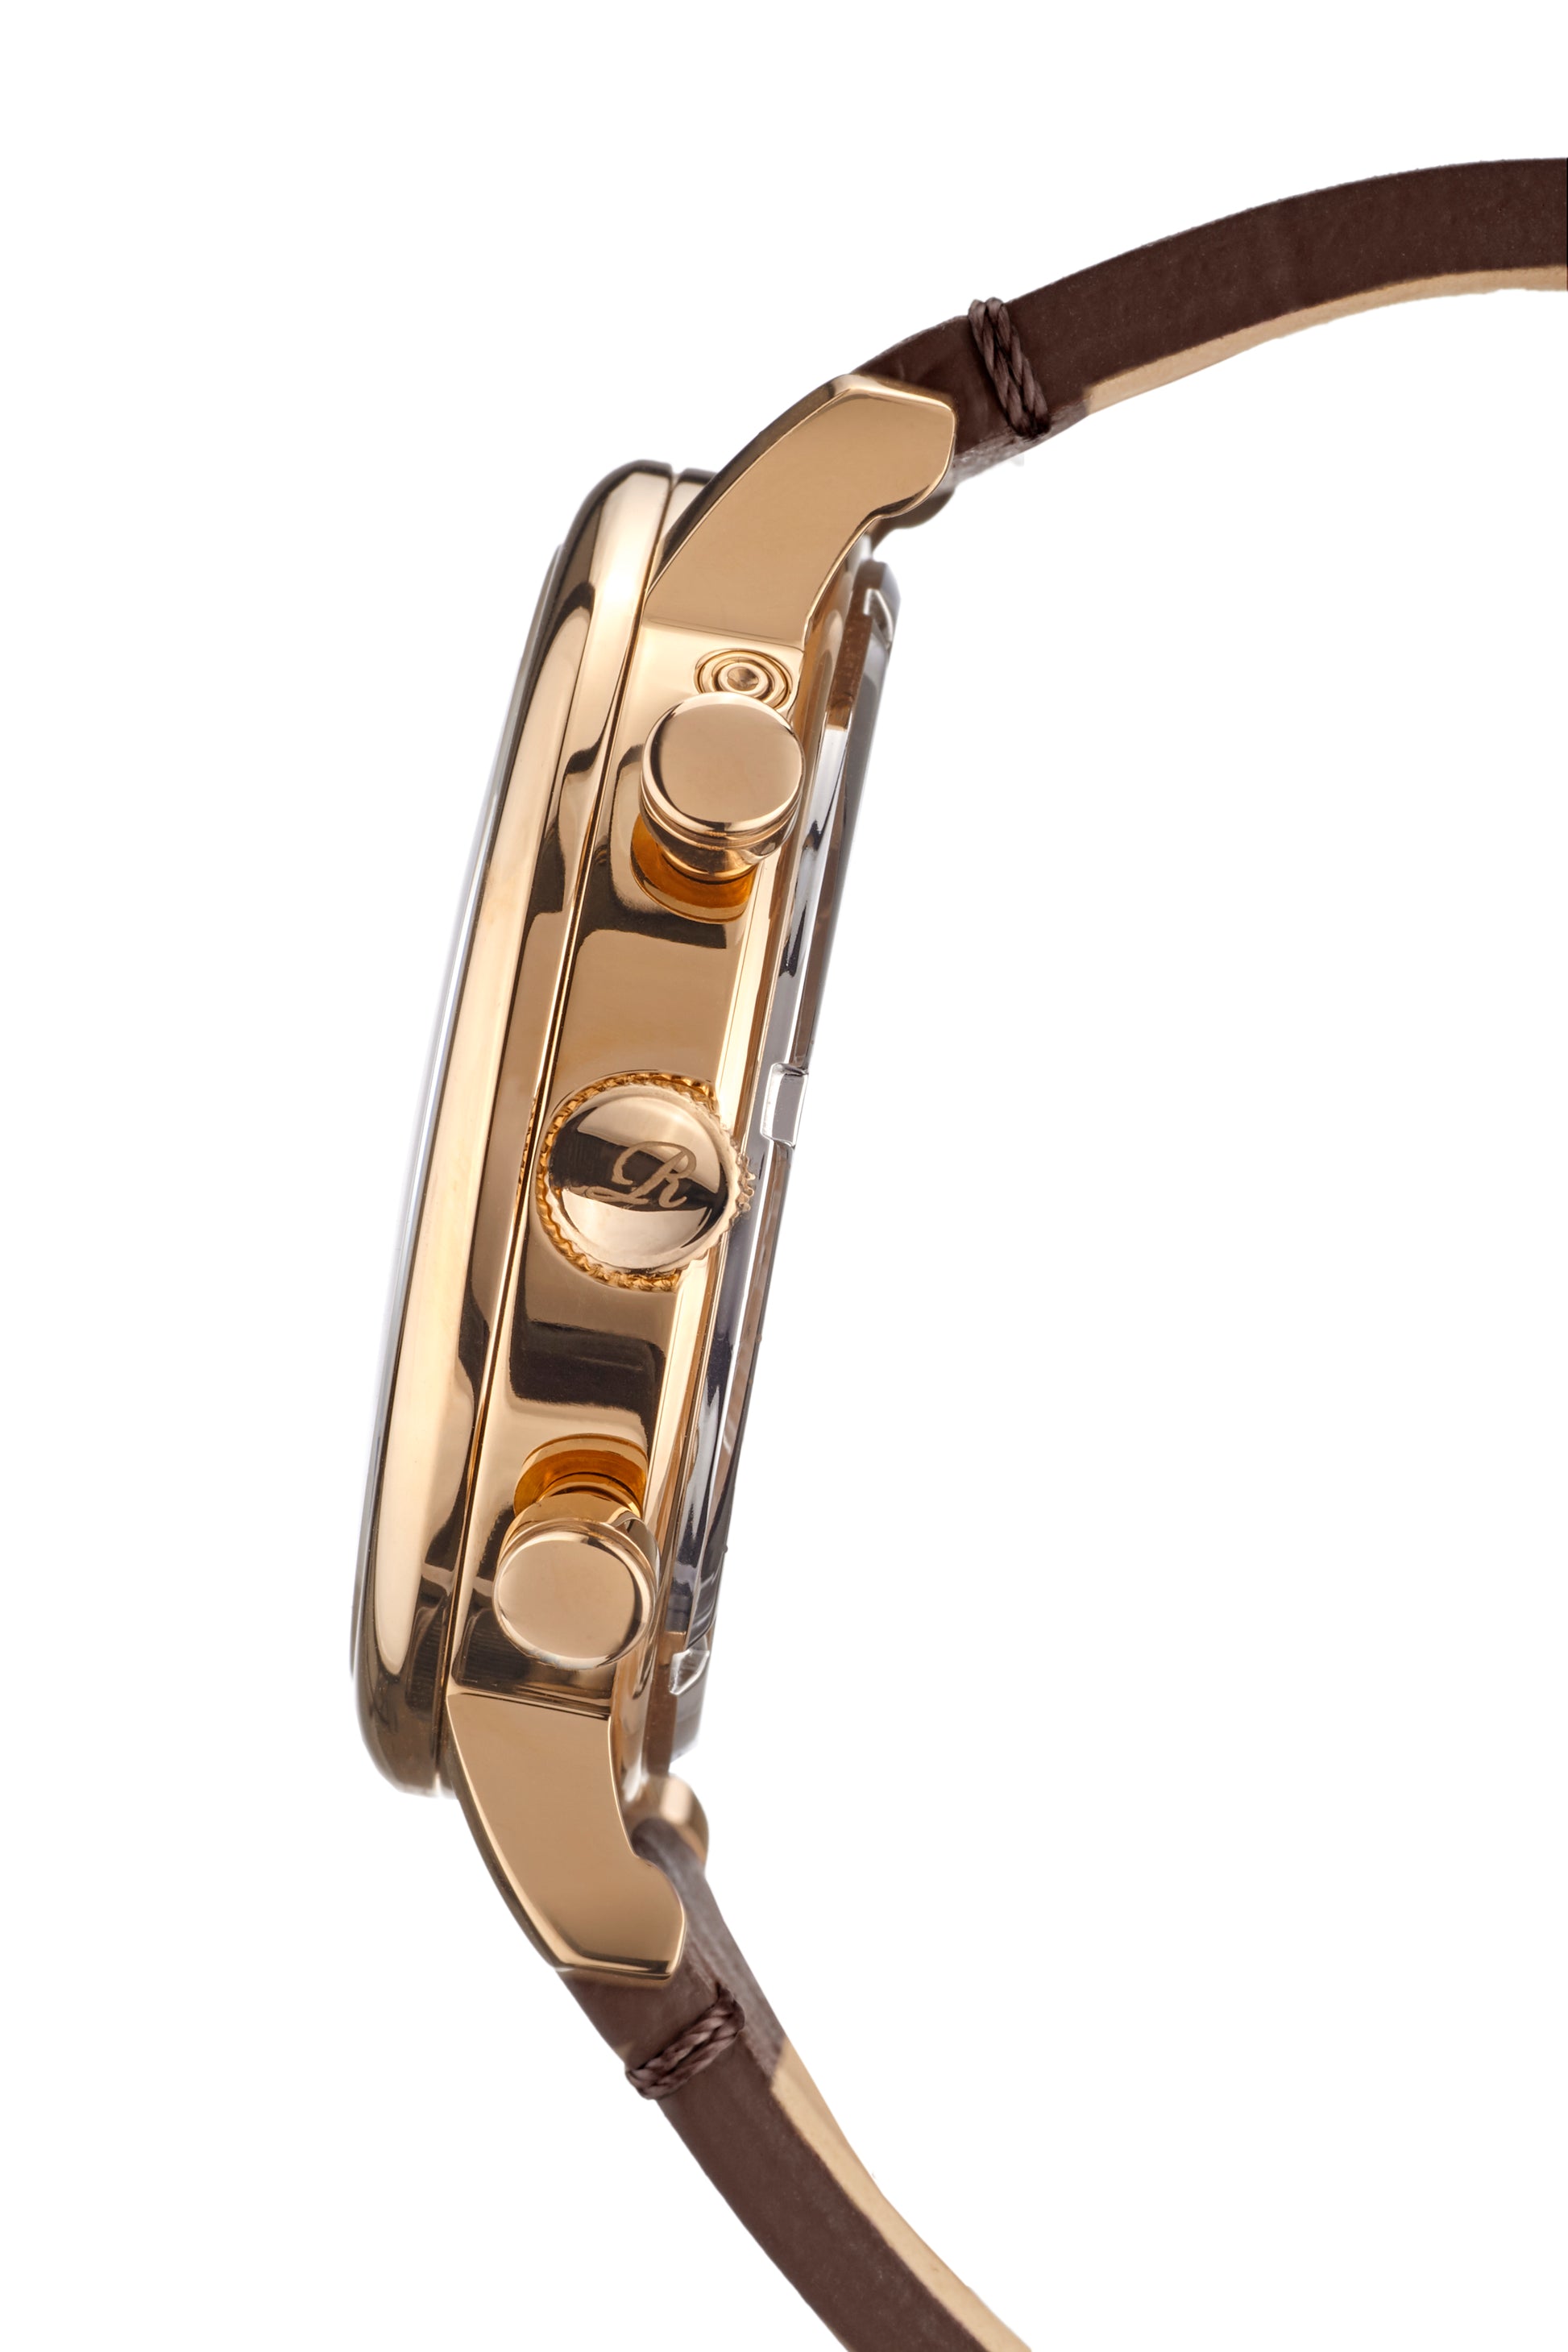 Automatic watches — Burbank — Richtenburg — rosegold IP silver